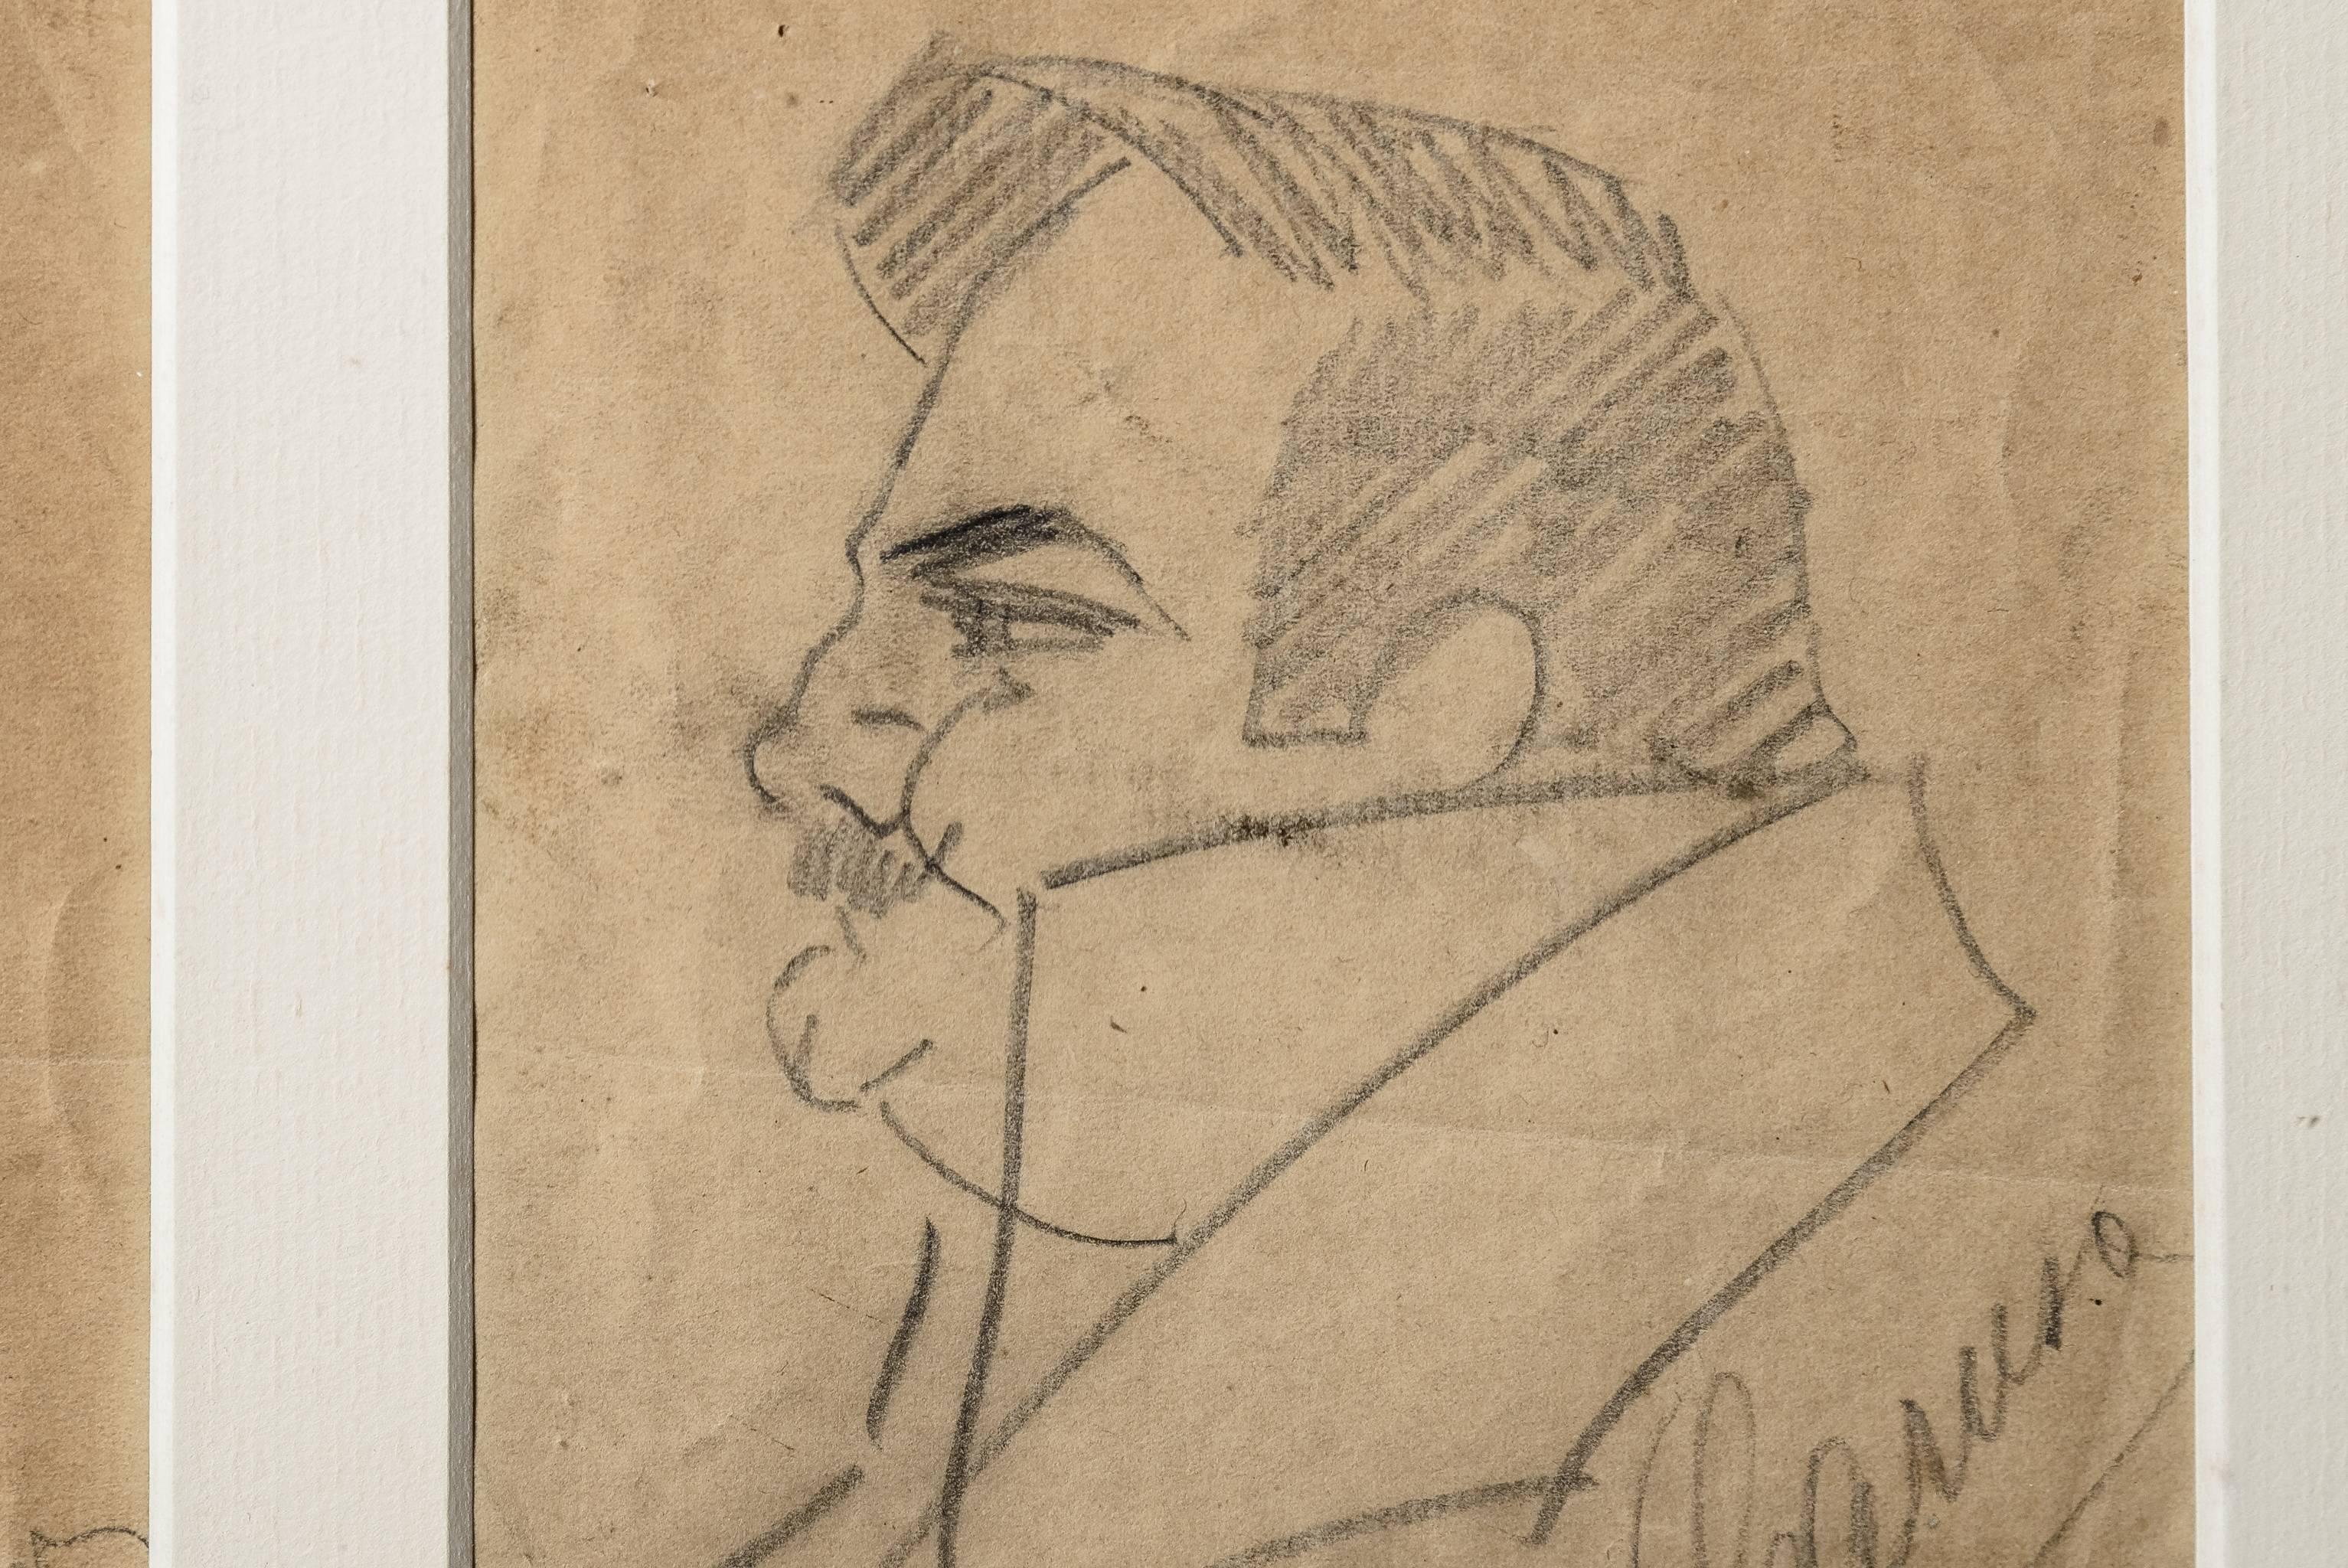 Paper Signed Pencil Sketch of Enrico Caruso and Arturo Buzzi-Peccia by Enrico Caruso For Sale